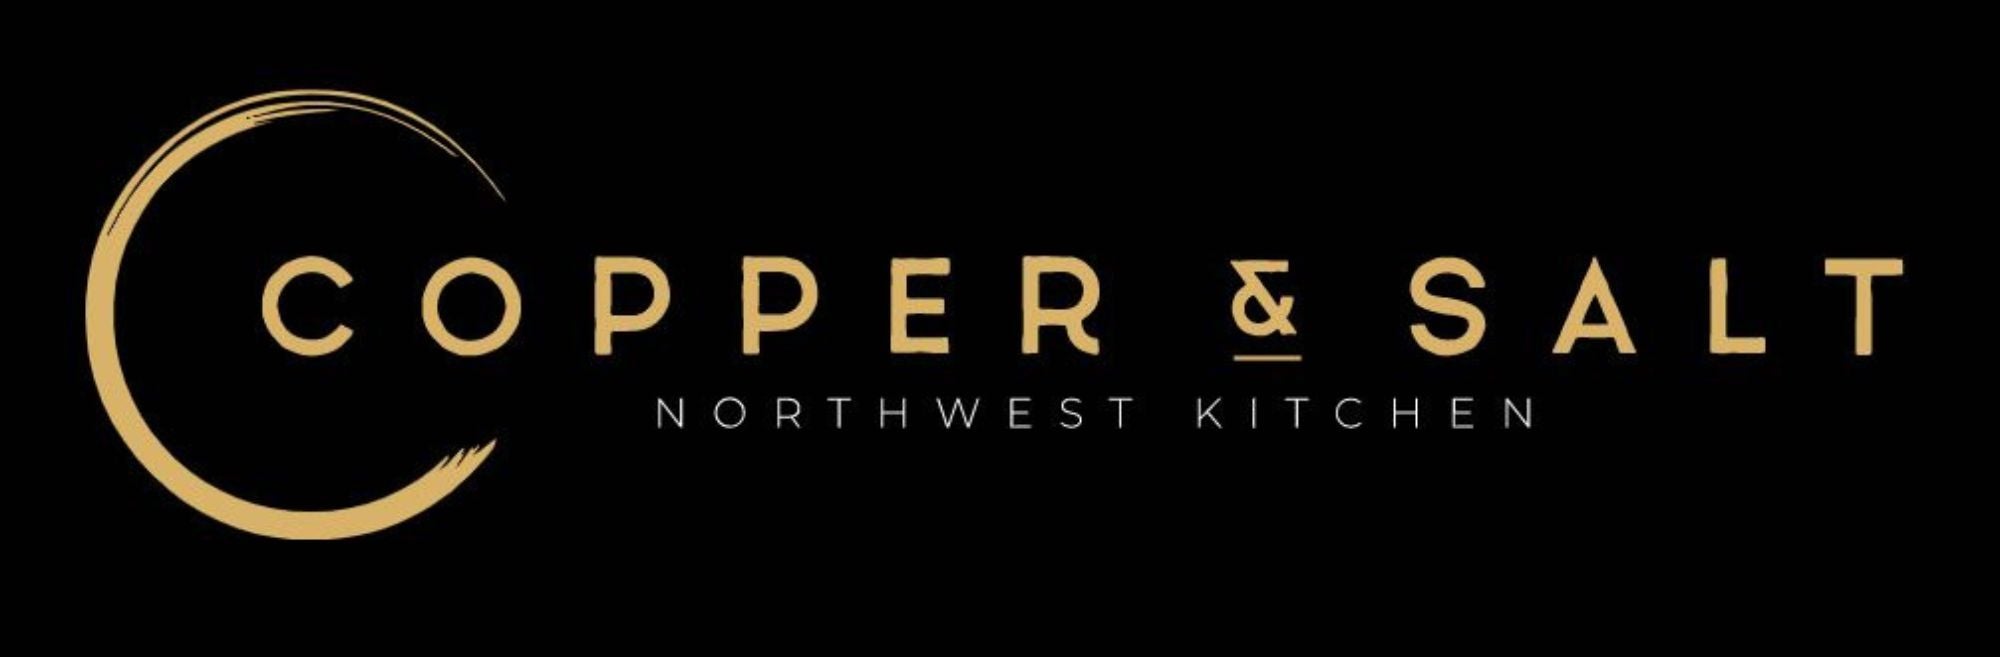 Copper and Salt Northwest Kitchen